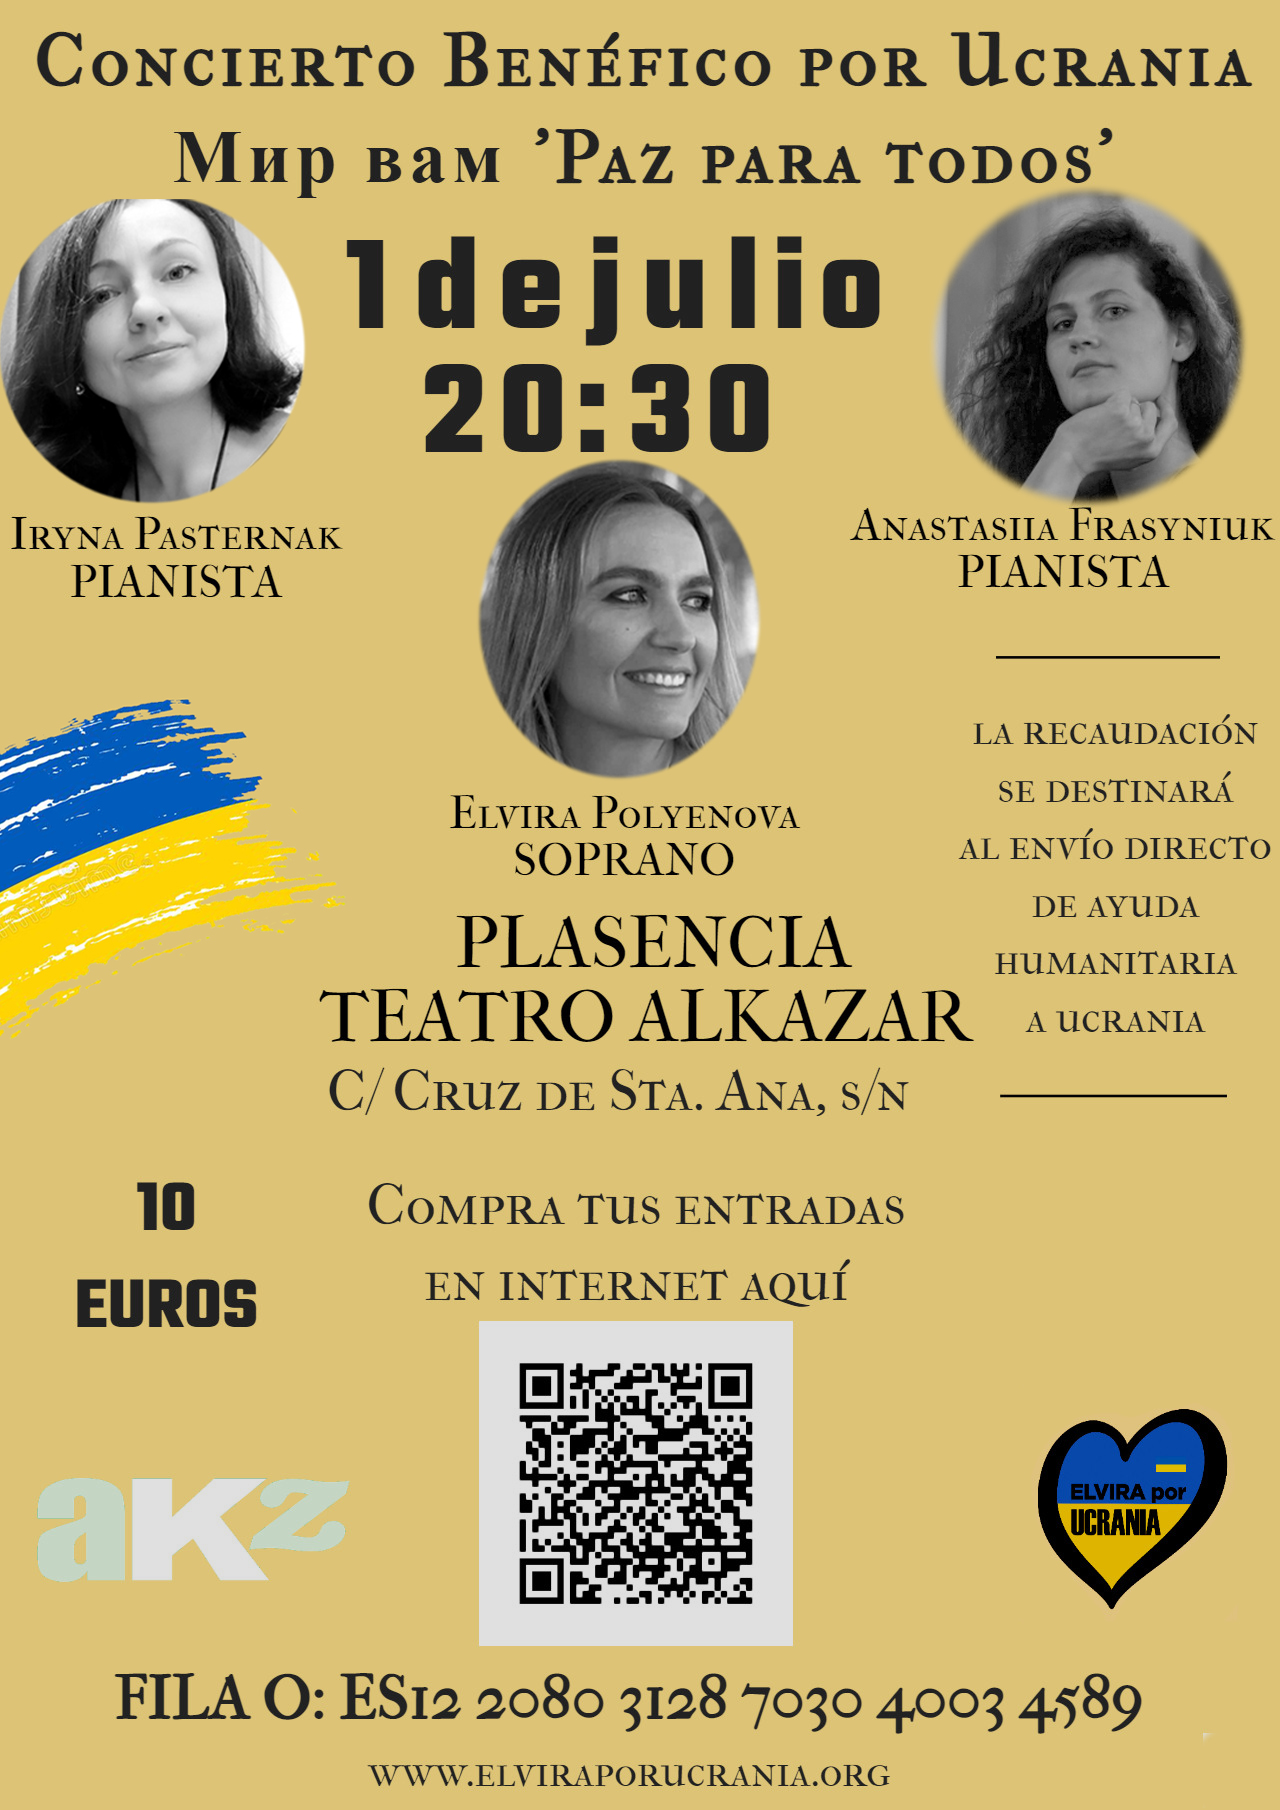 Teatro Alkazar 1 julio